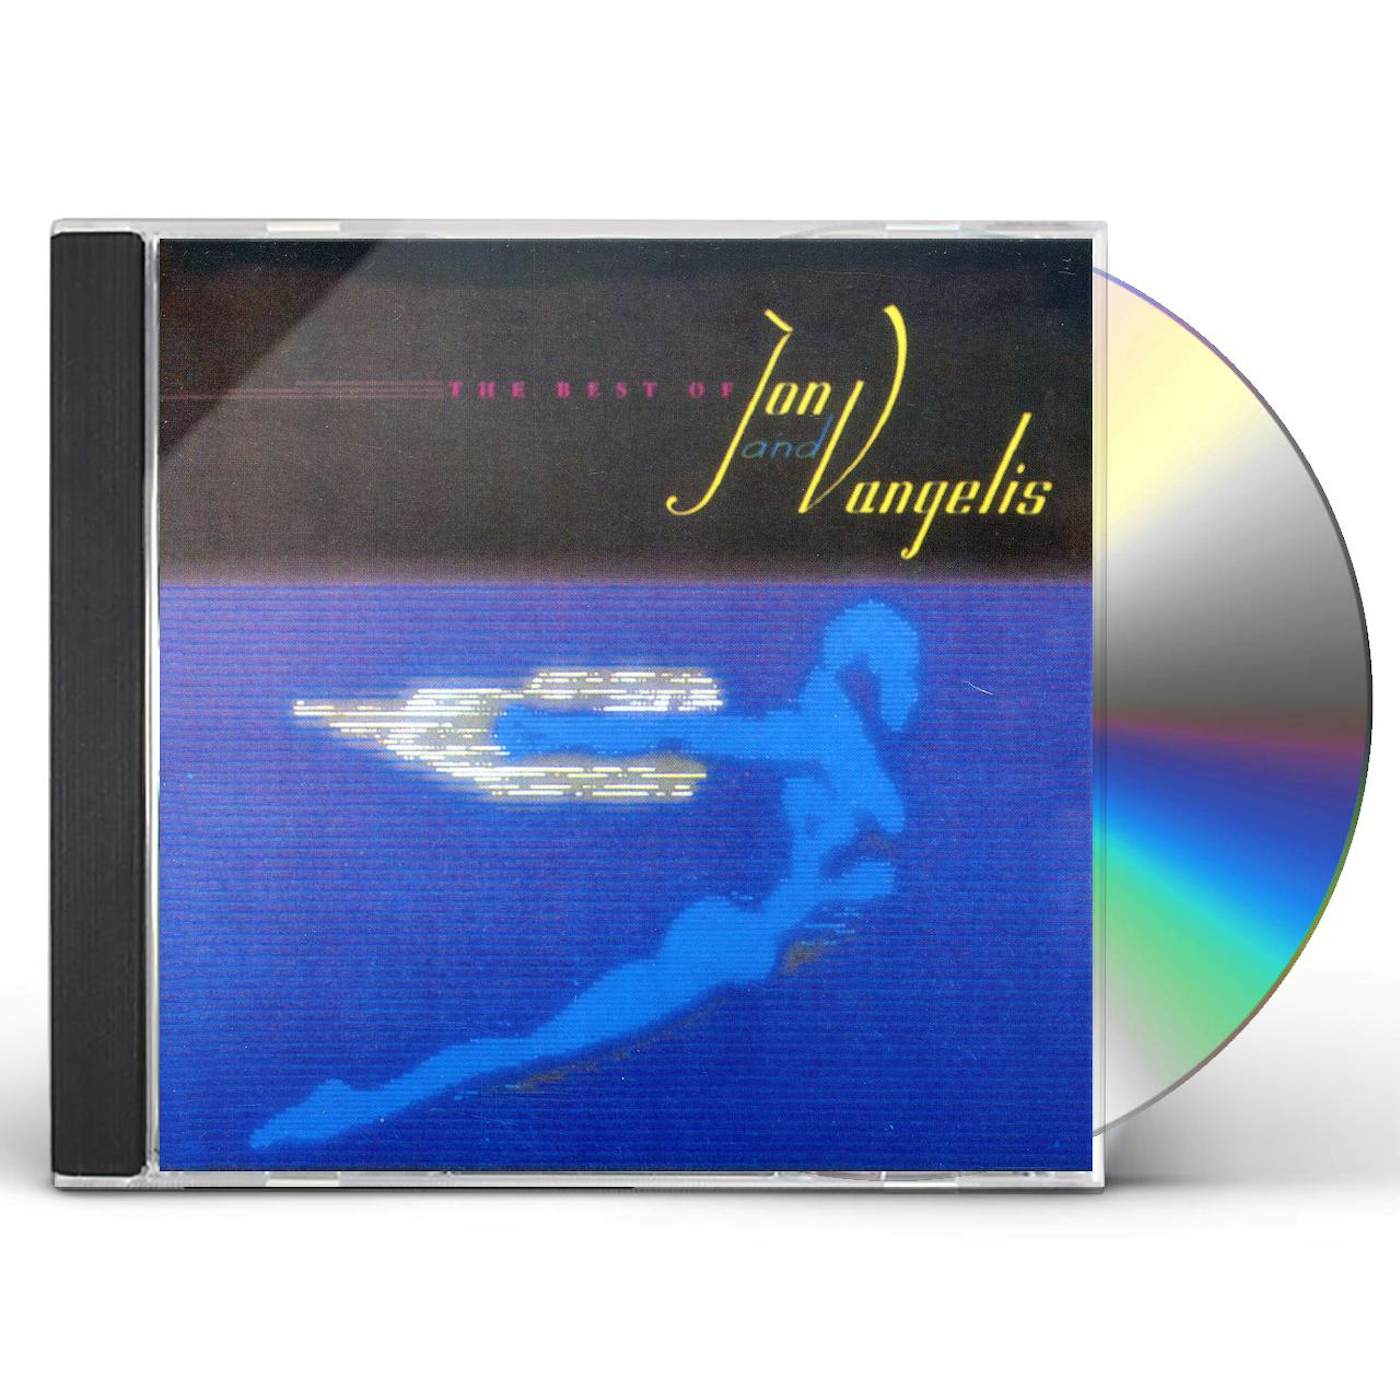 Jon & Vangelis BEST OF CD